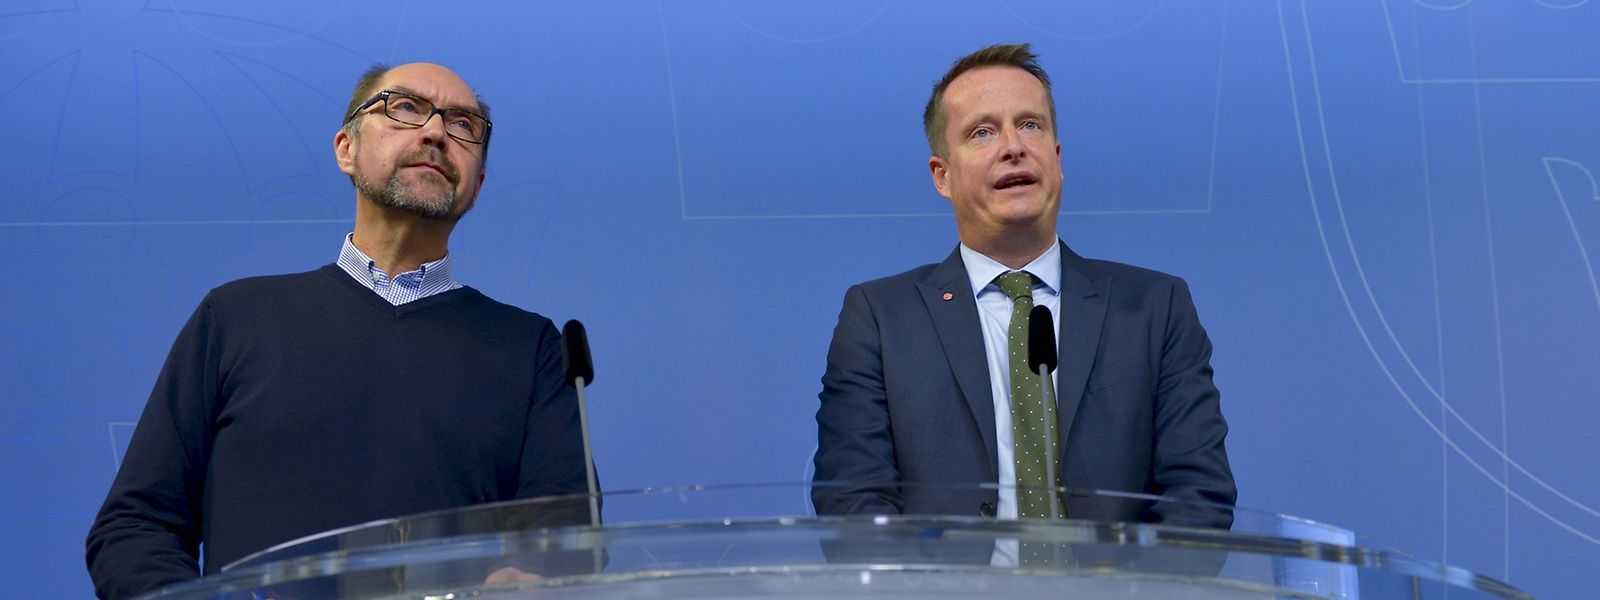 Der schwedische Innenminister Anders Ygeman kündigte die Grenzkontrollen am Mittwoch an.